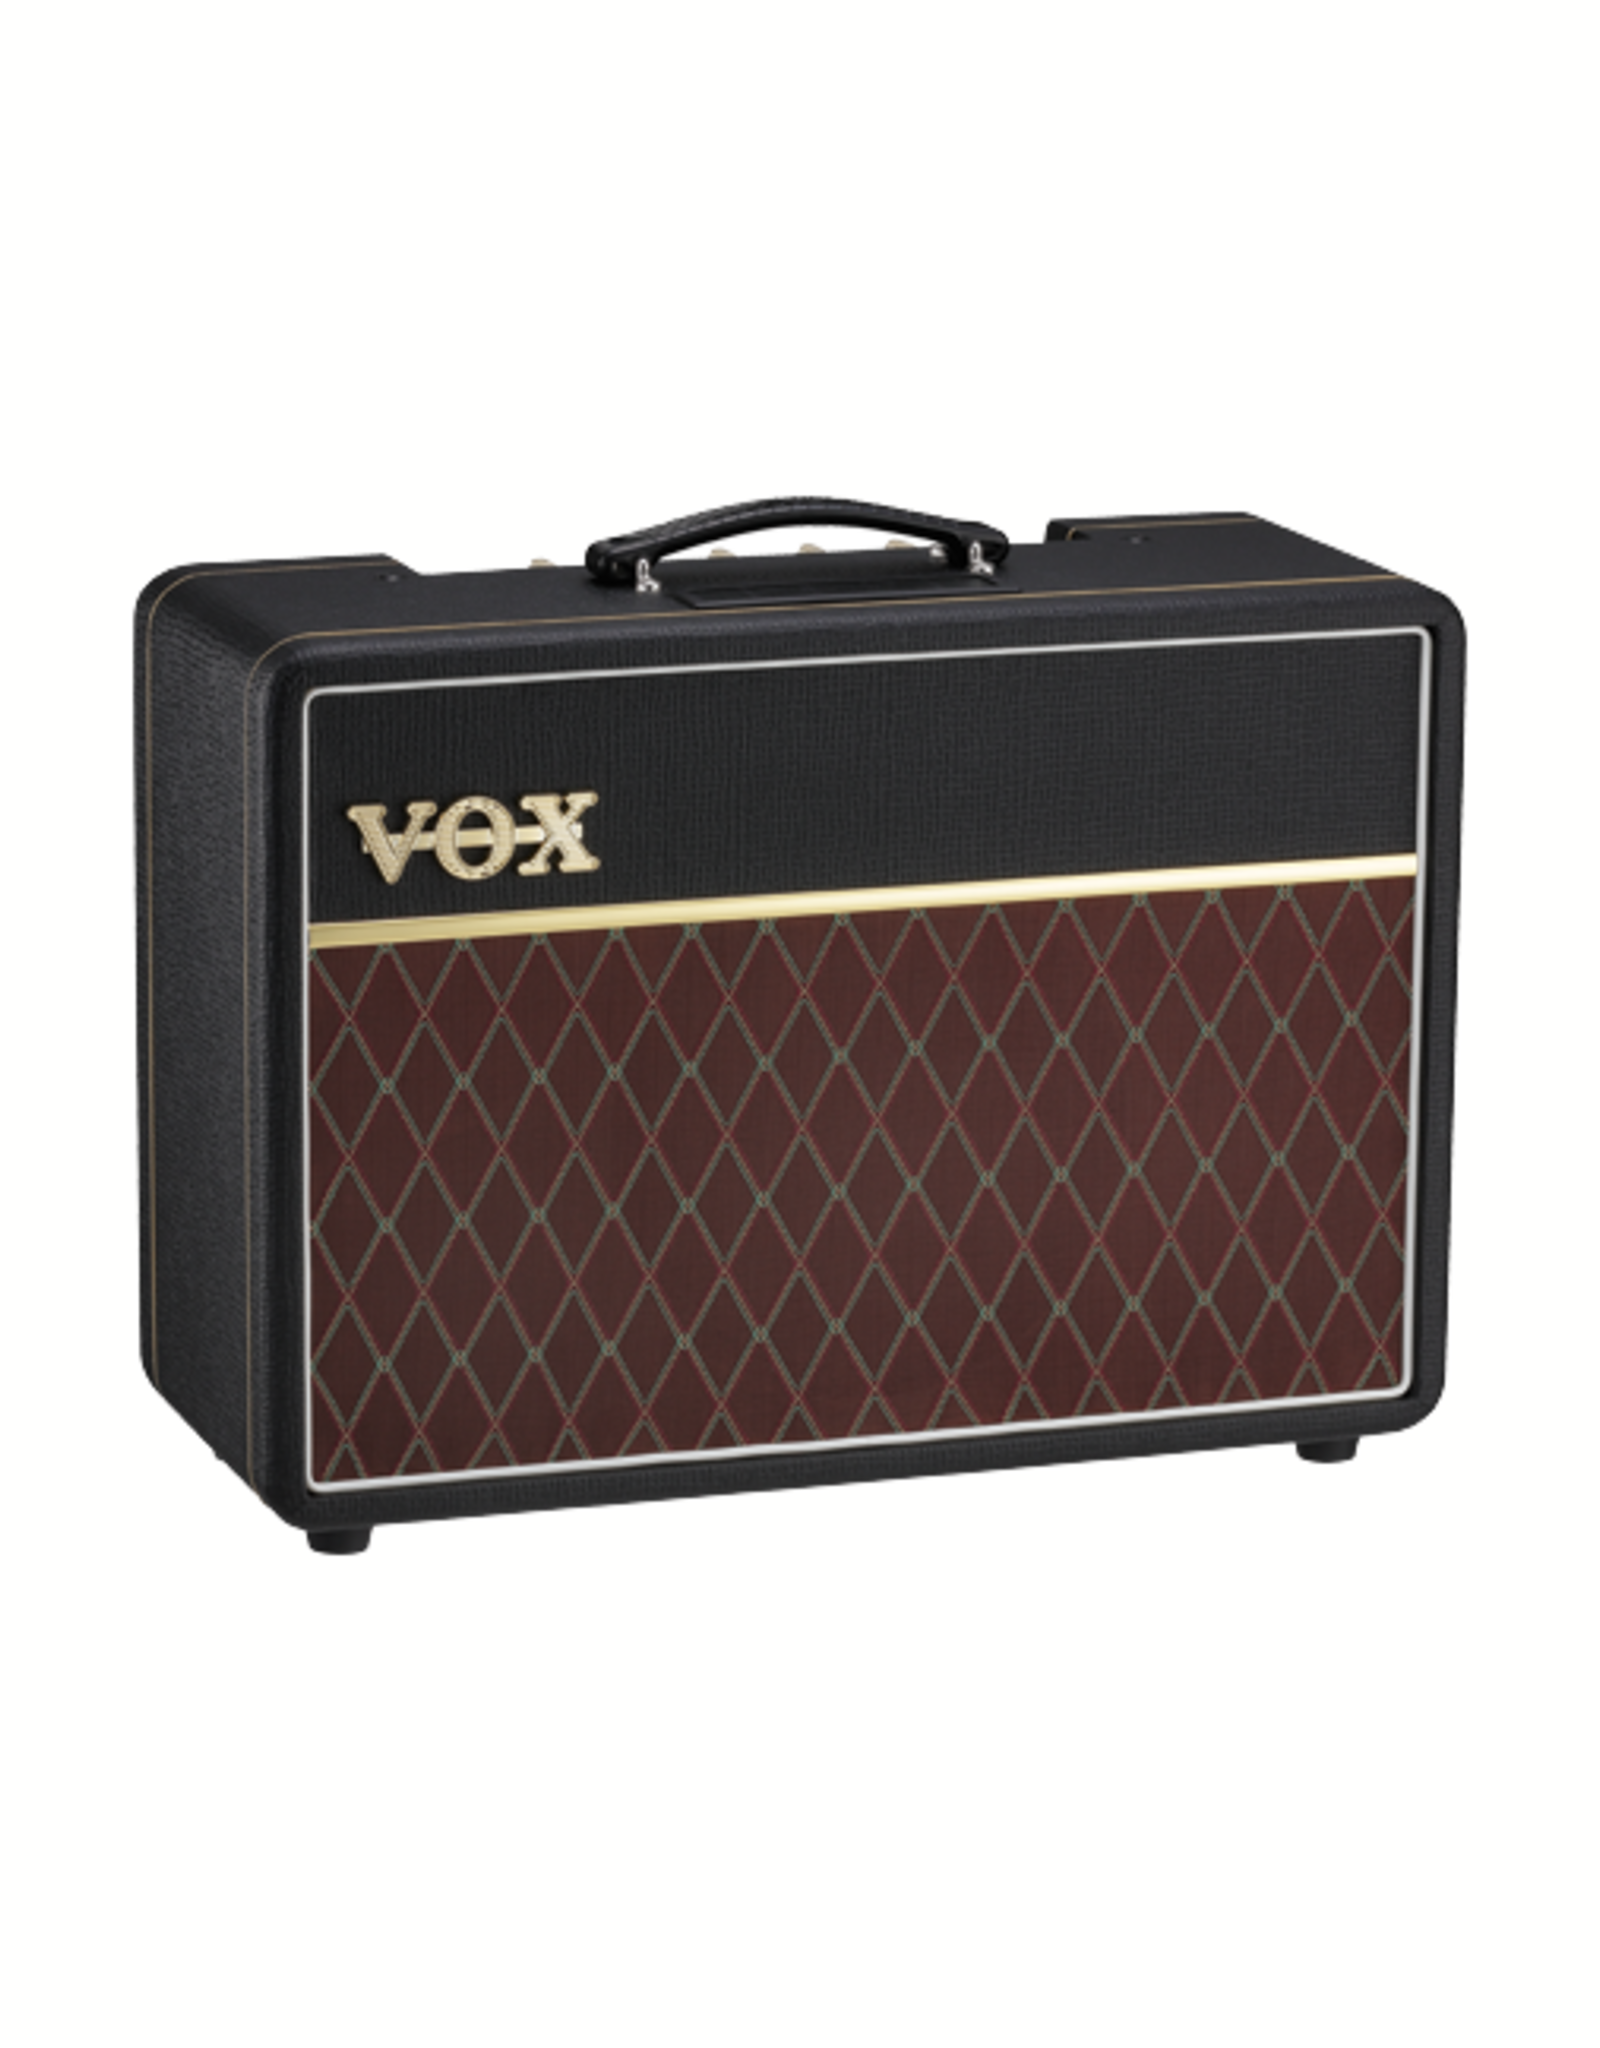 Vox Vox AC10 Guitar Amp